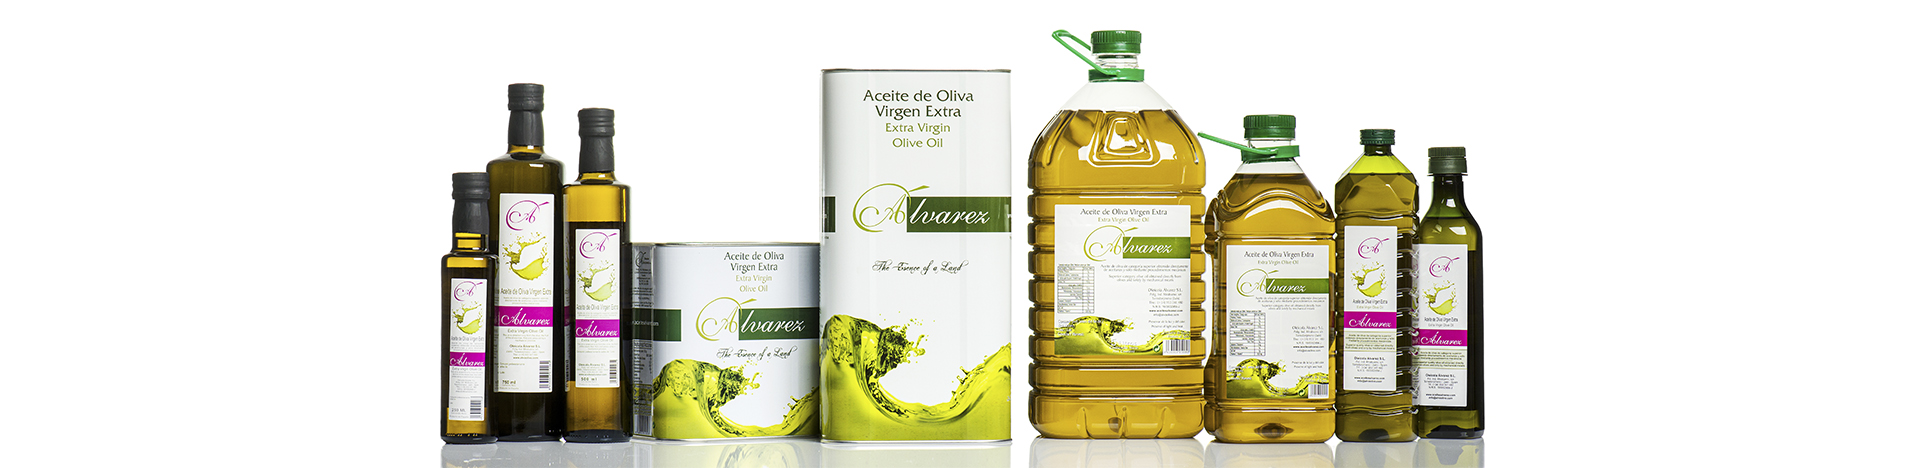 aceite-de-oliva-oleicola-tienda